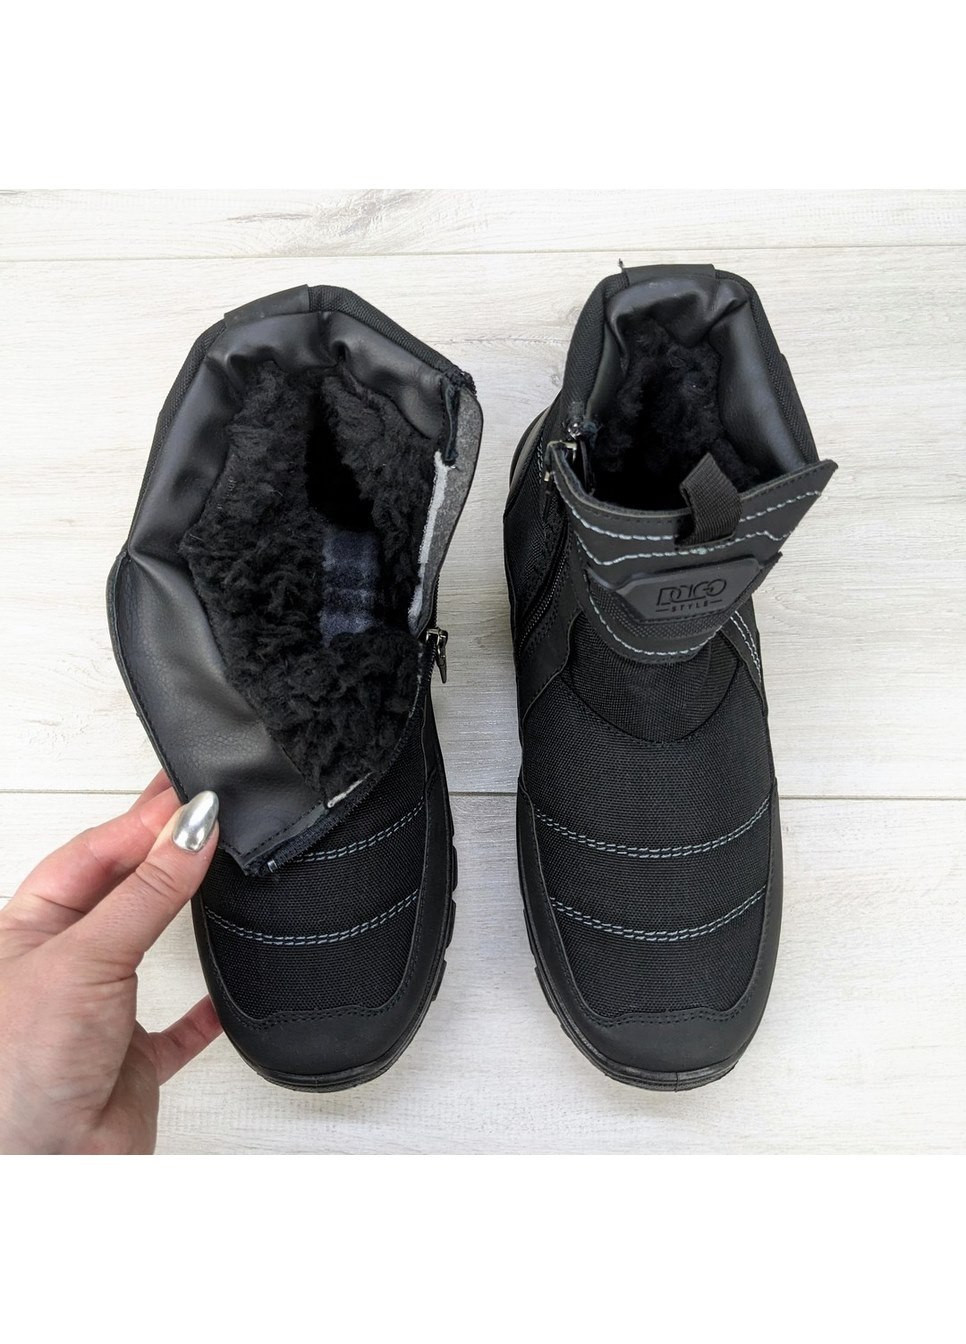 Черные зимние ботинки мужские зимние на меху Dago